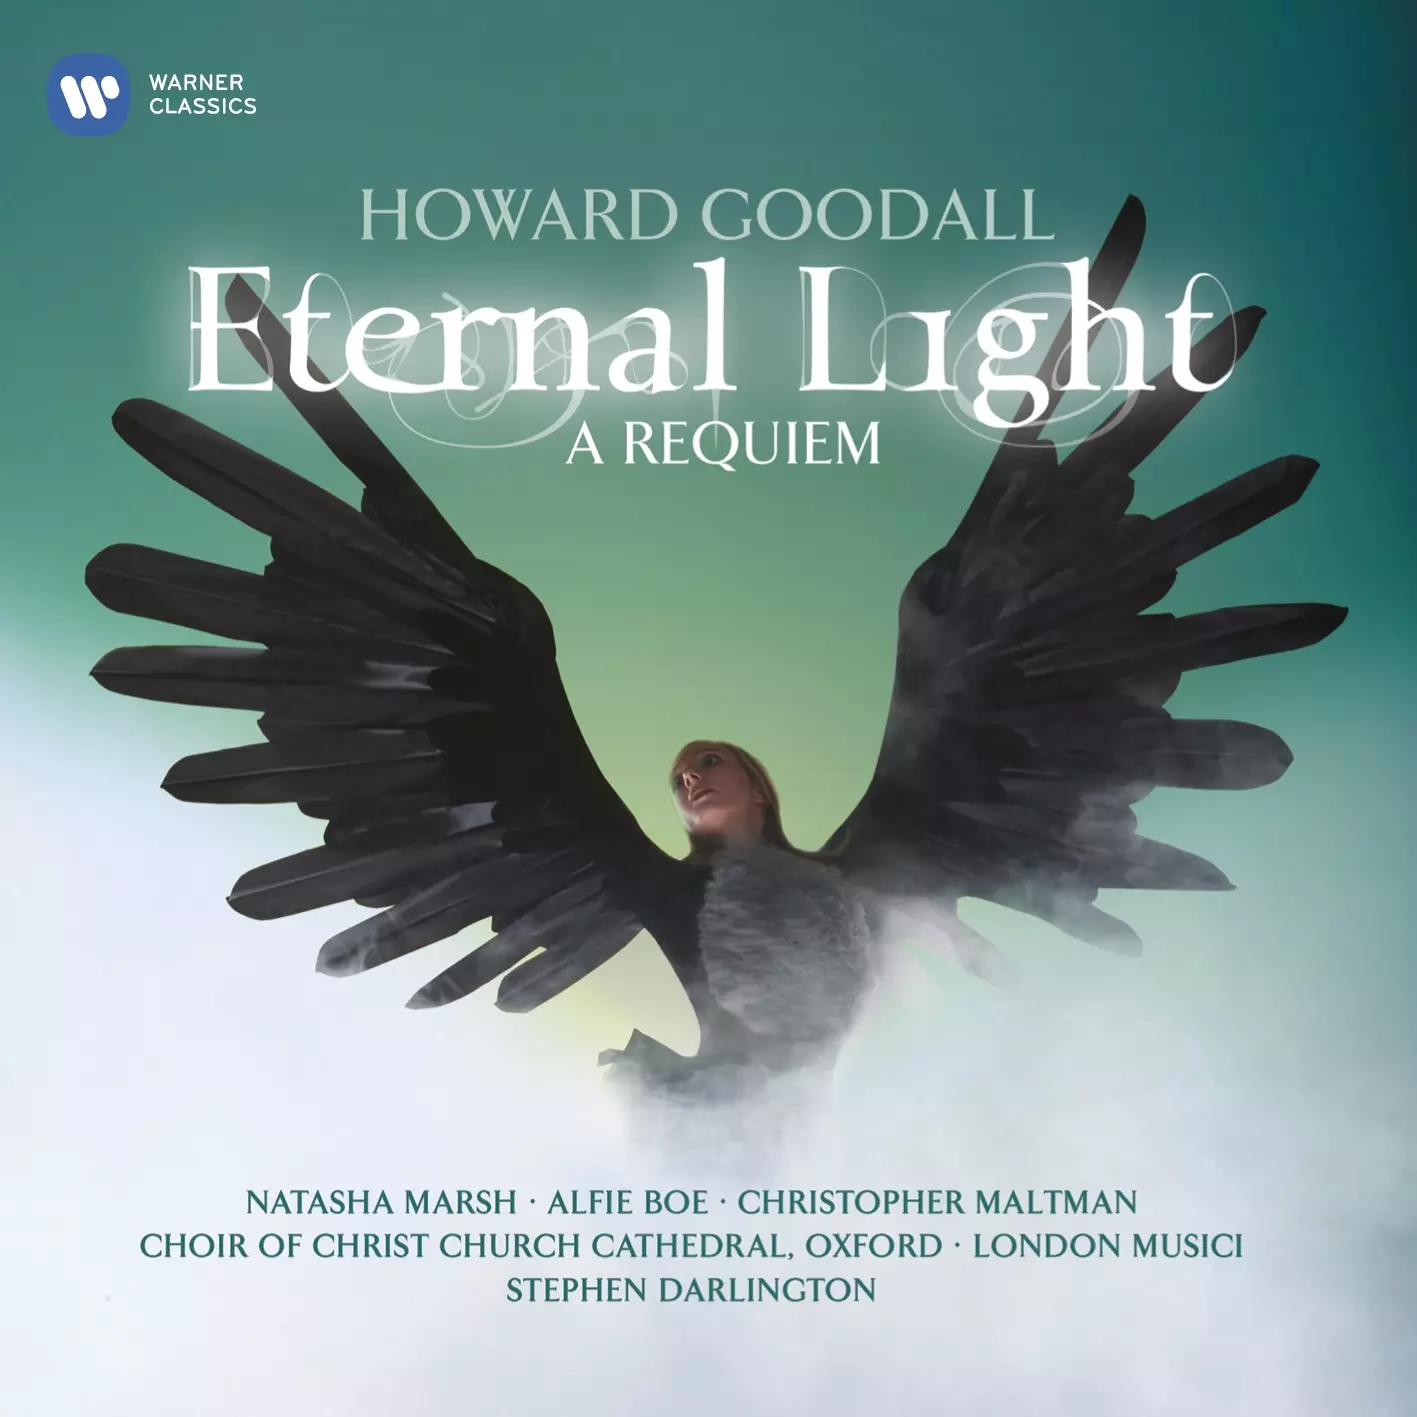 Eternal Light: A Requiem